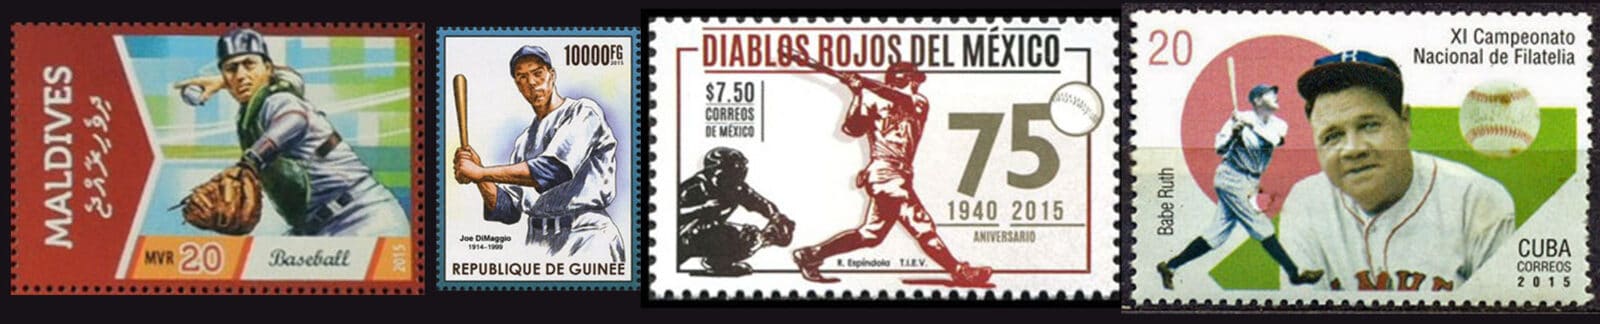 2015 Baseball Postage Stamps header